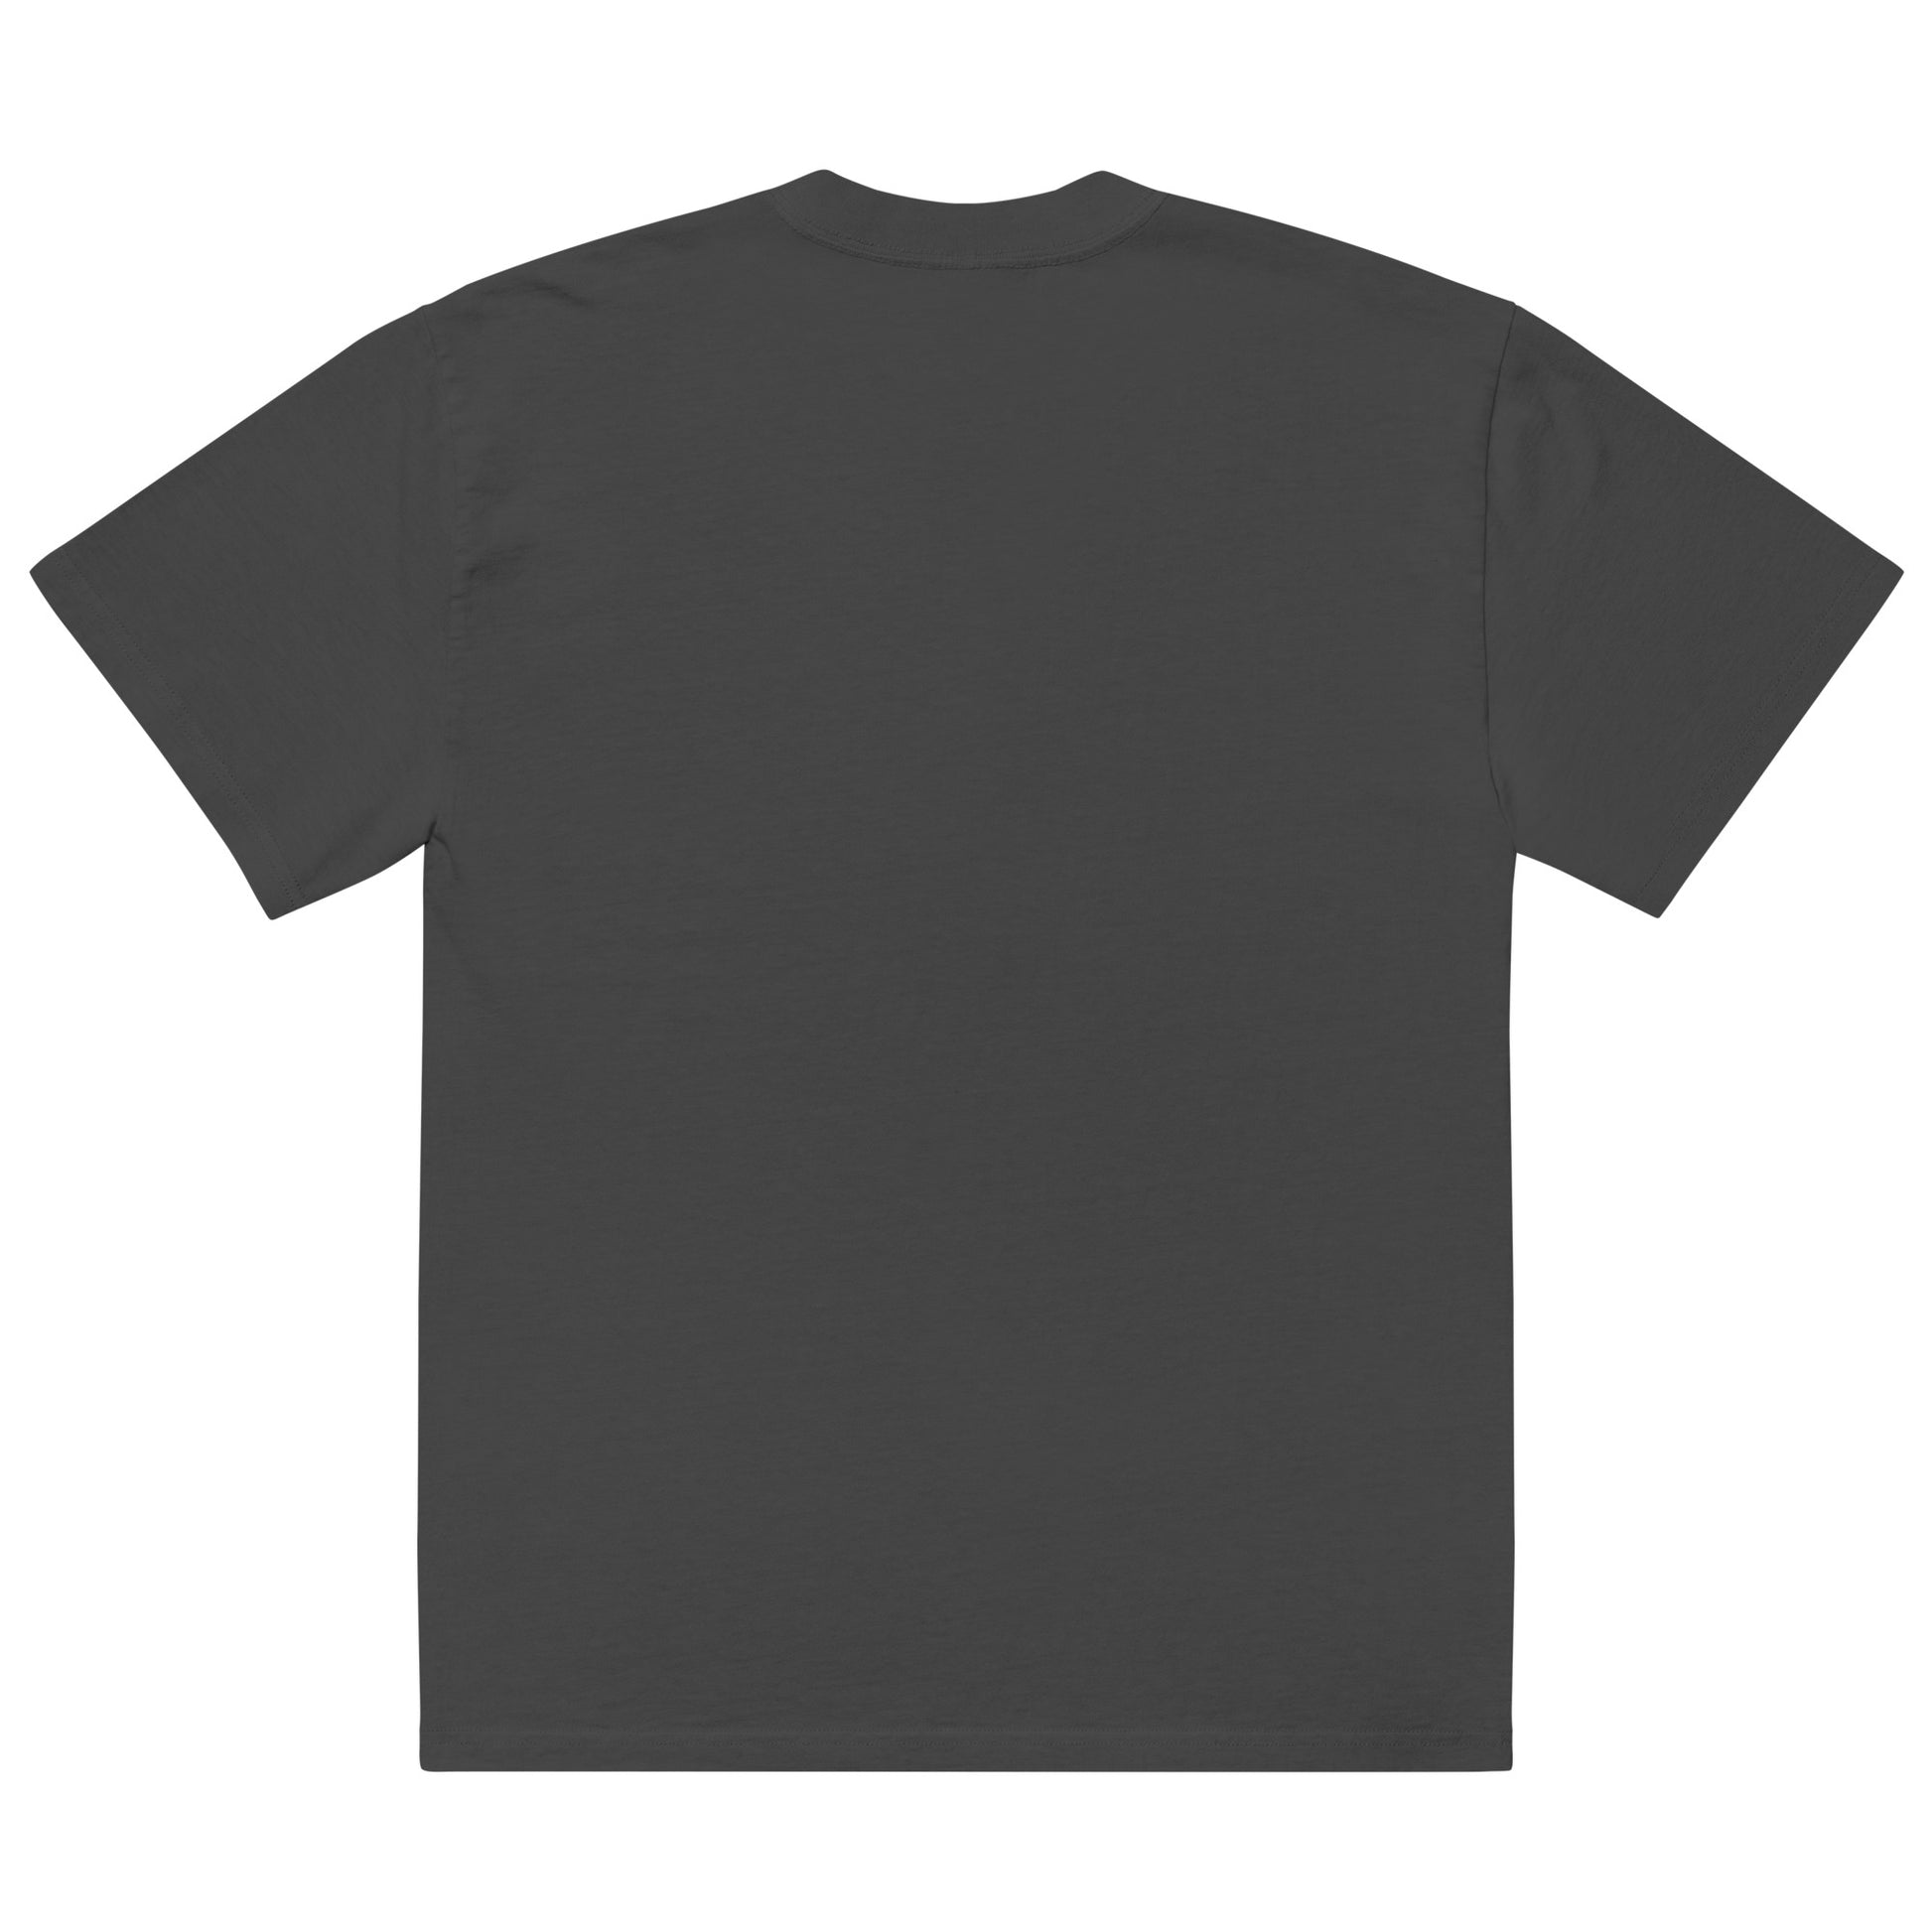 BlackMars Oversized t-shirt - Premium  from BlackMars  - Just £30! Shop now at BlackMars 30BlackMars 